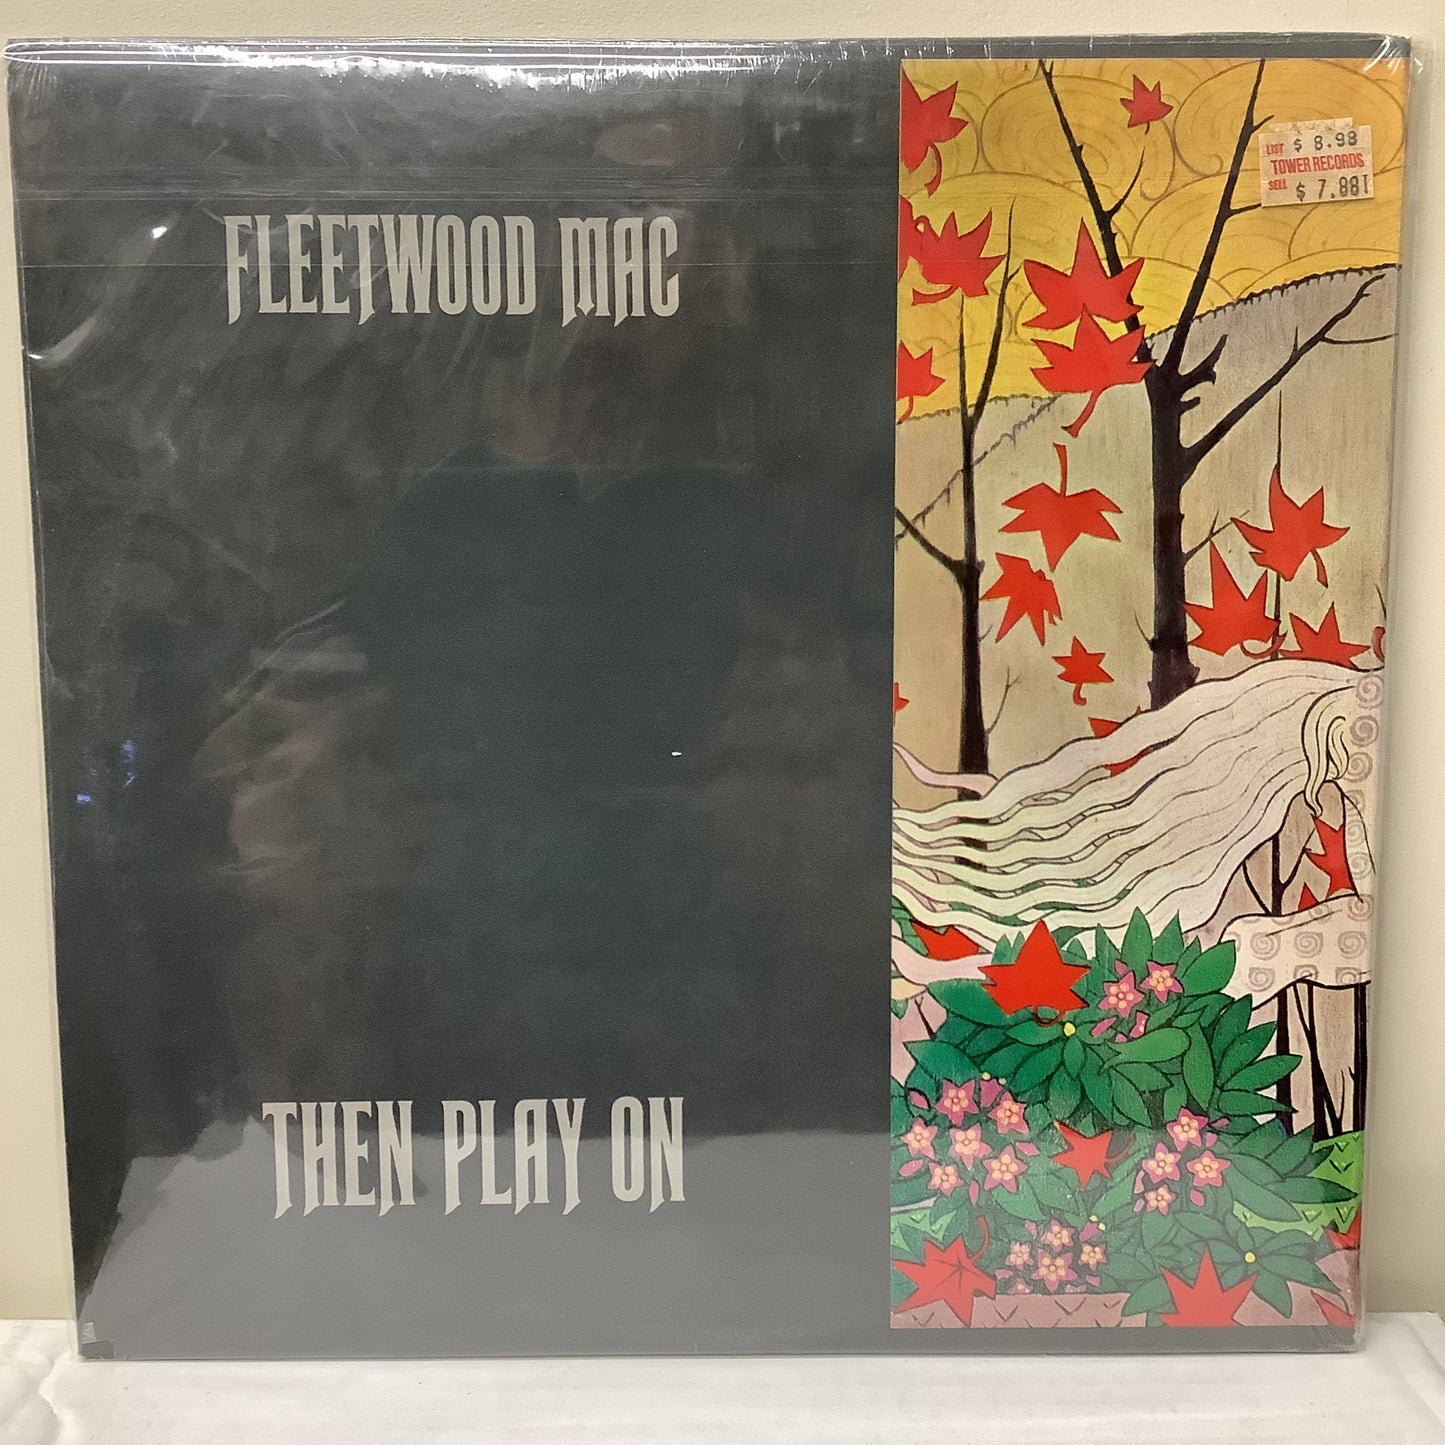 Fleetwood Mac - Entonces toca - LP